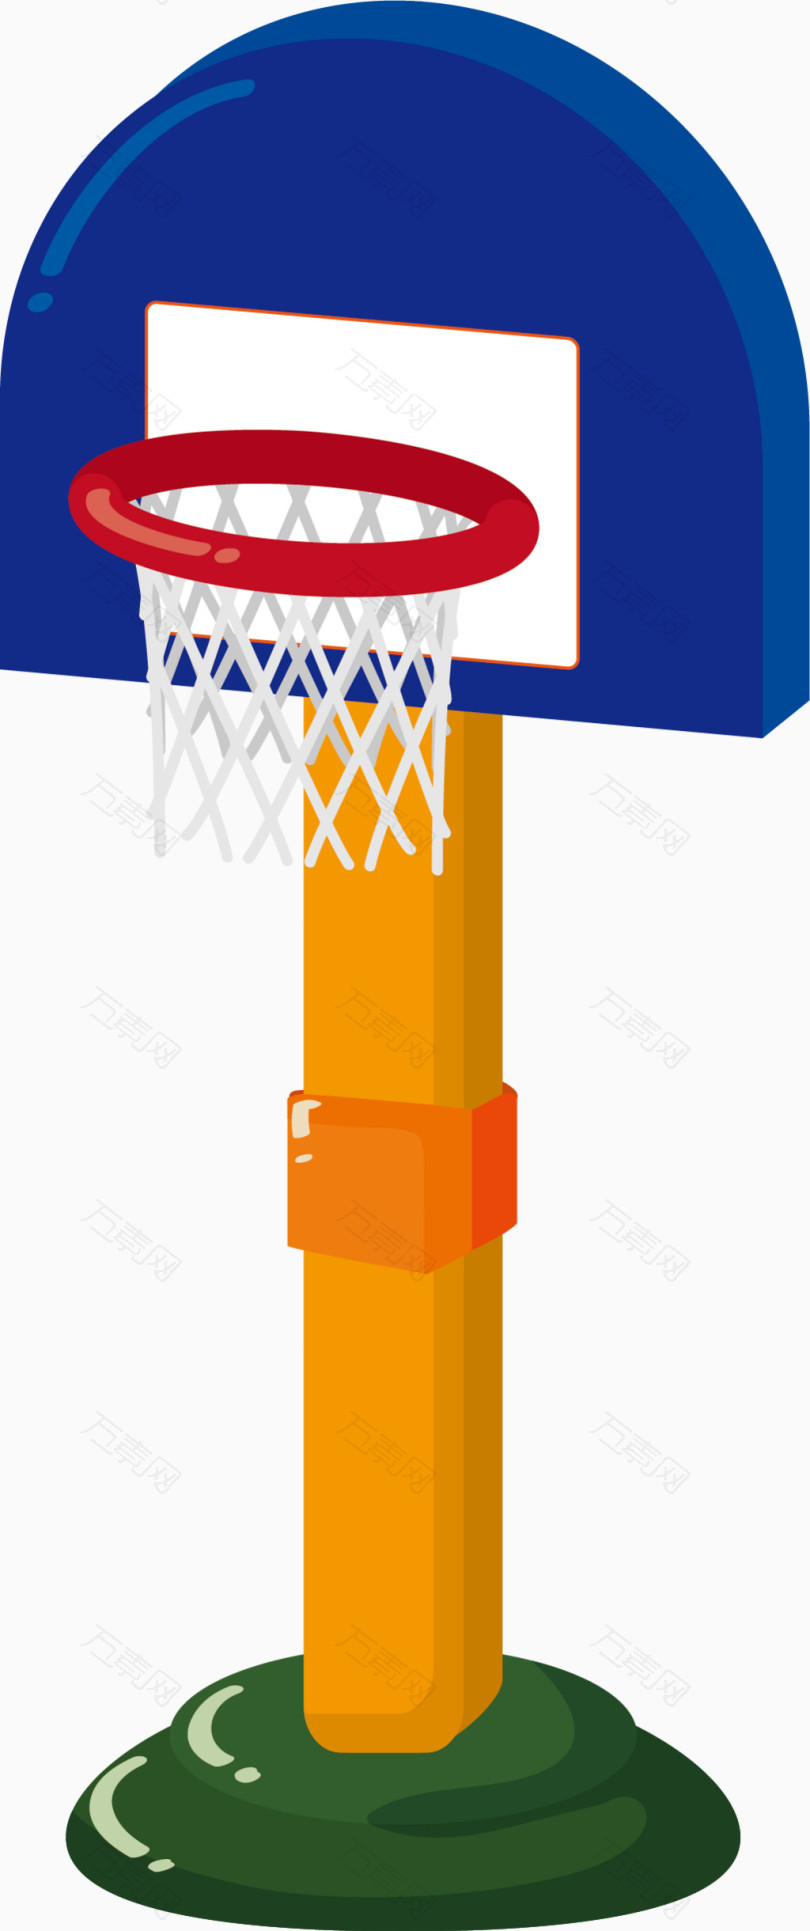 篮球框素材